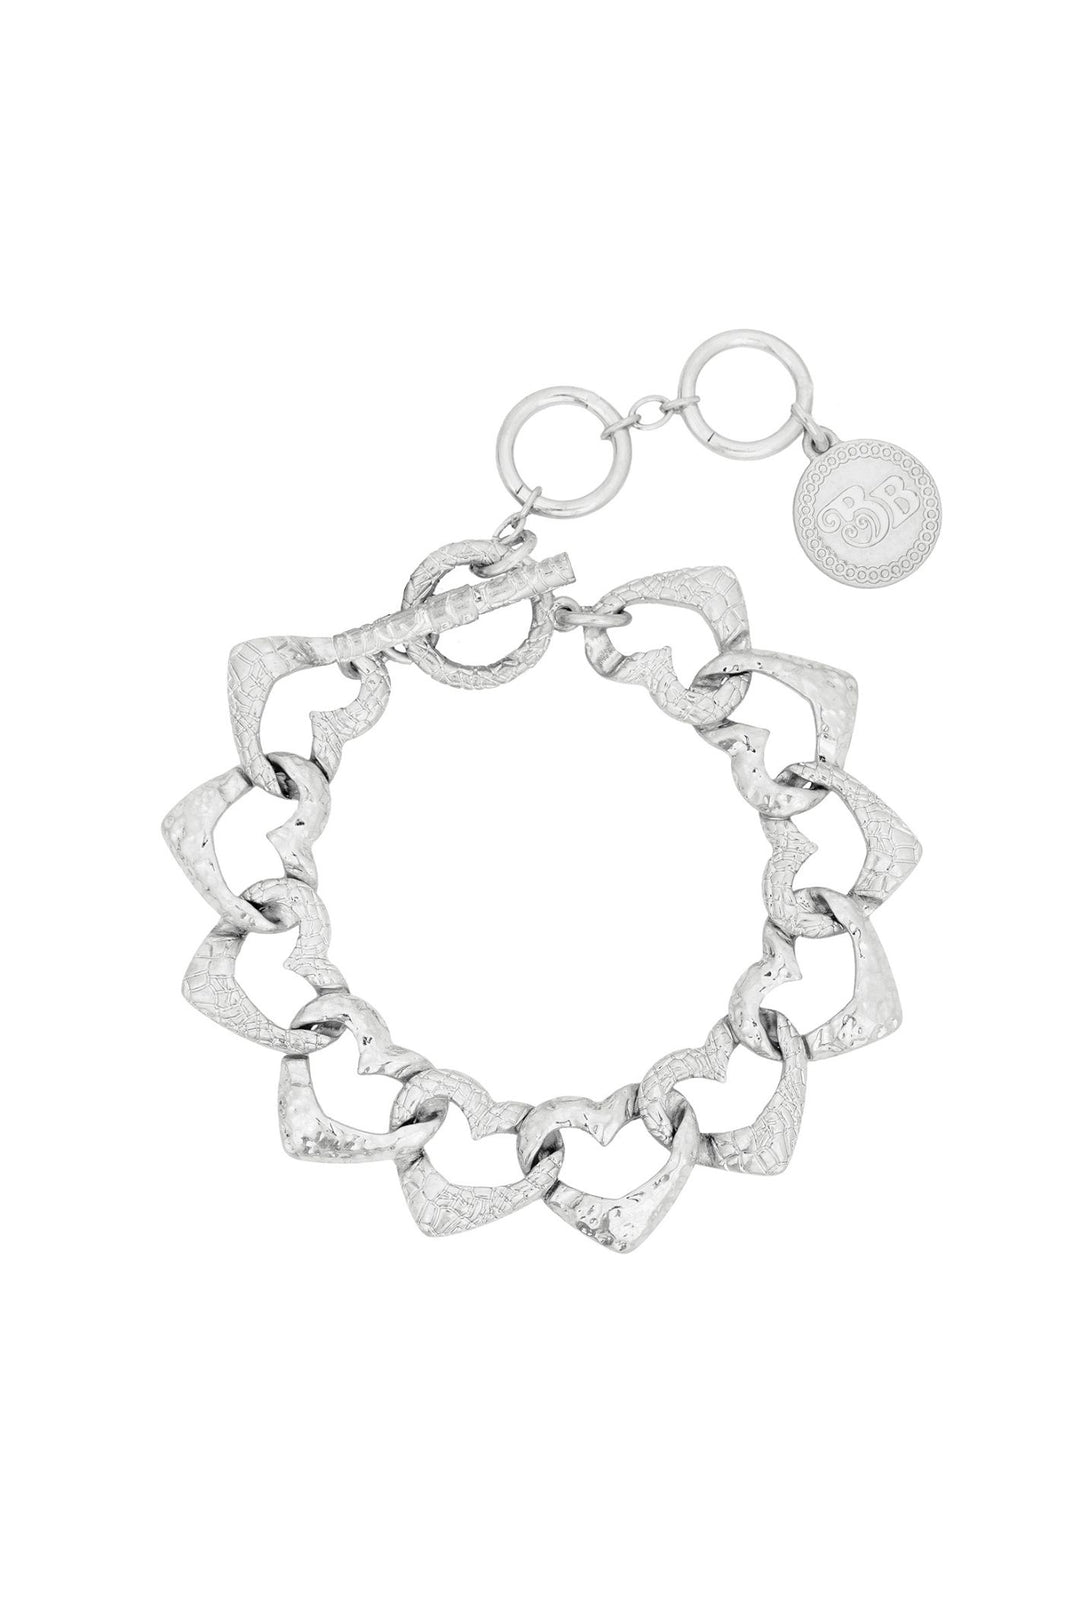 Bibi Bijoux Silver Hearts All Around Chain Bracelet